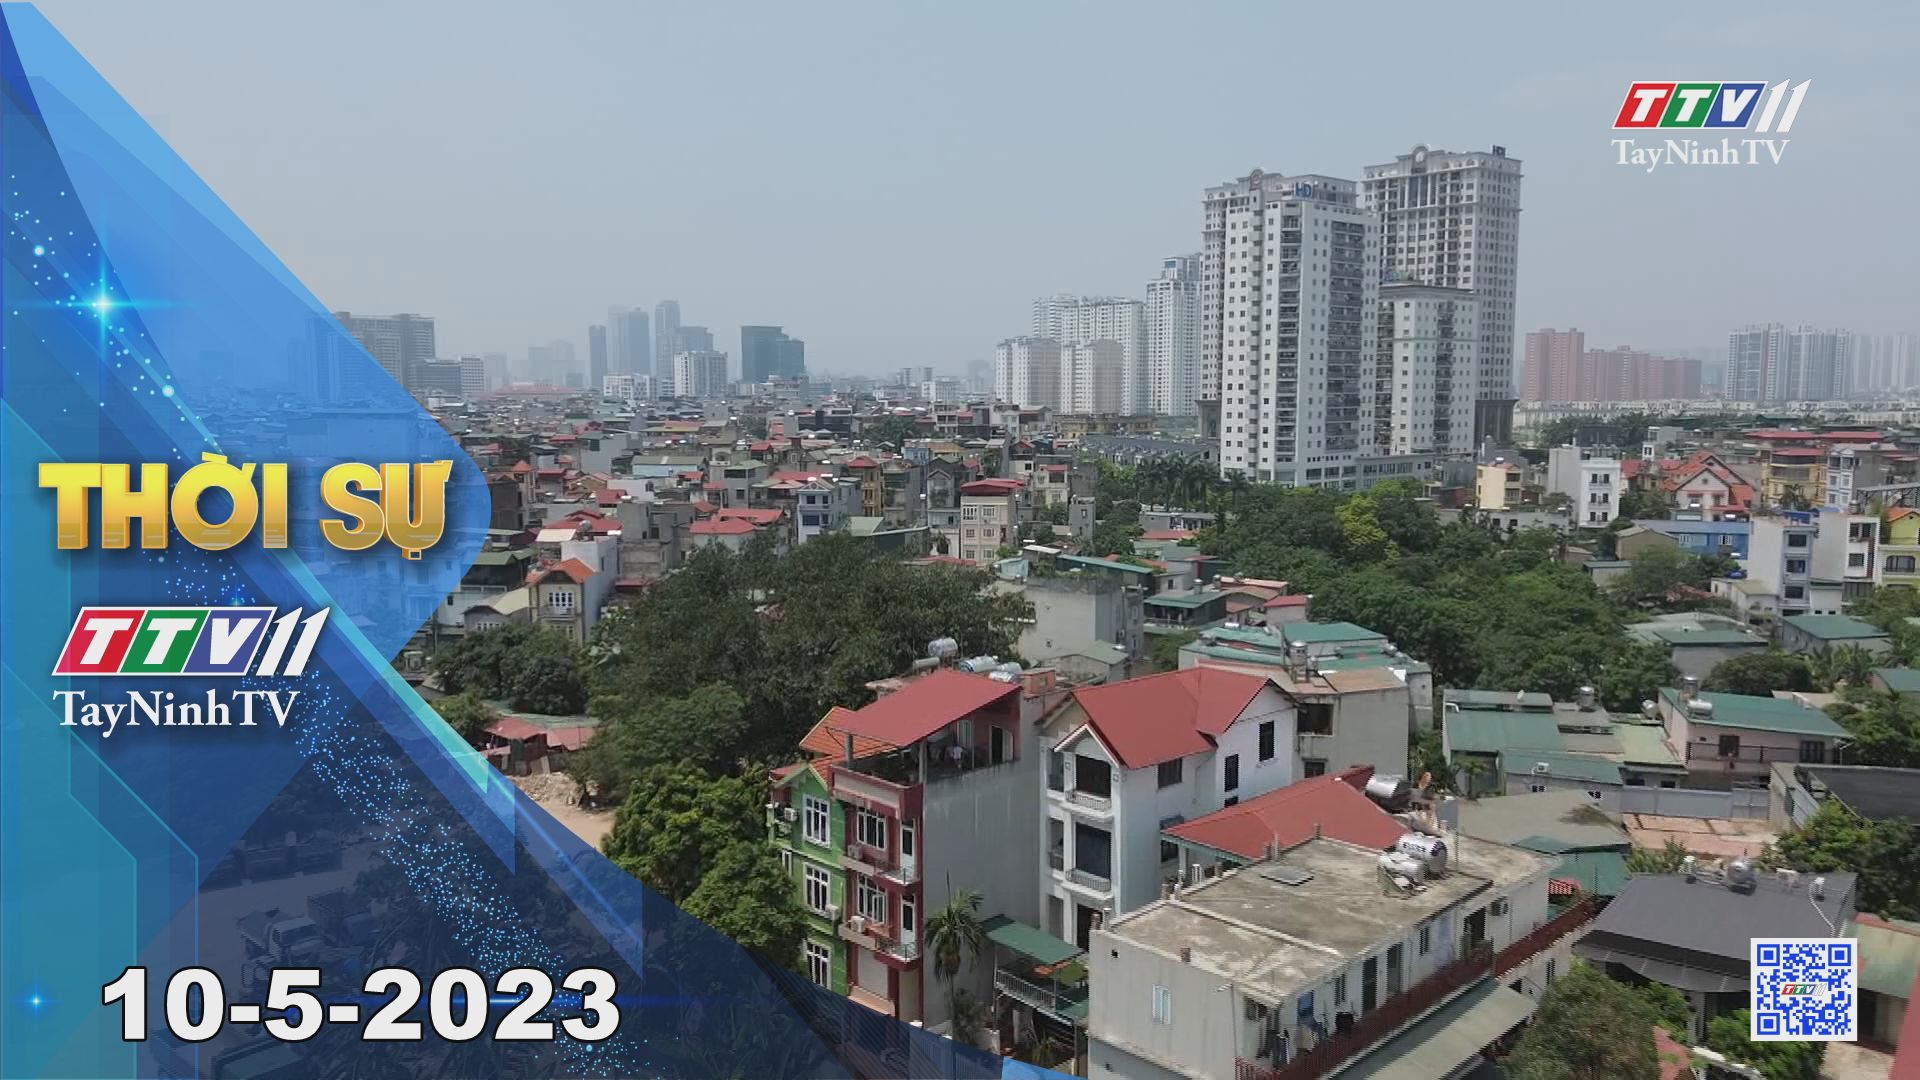 Thời sự Tây Ninh 10-5-2023 | Tin tức hôm nay | TayNinhTV